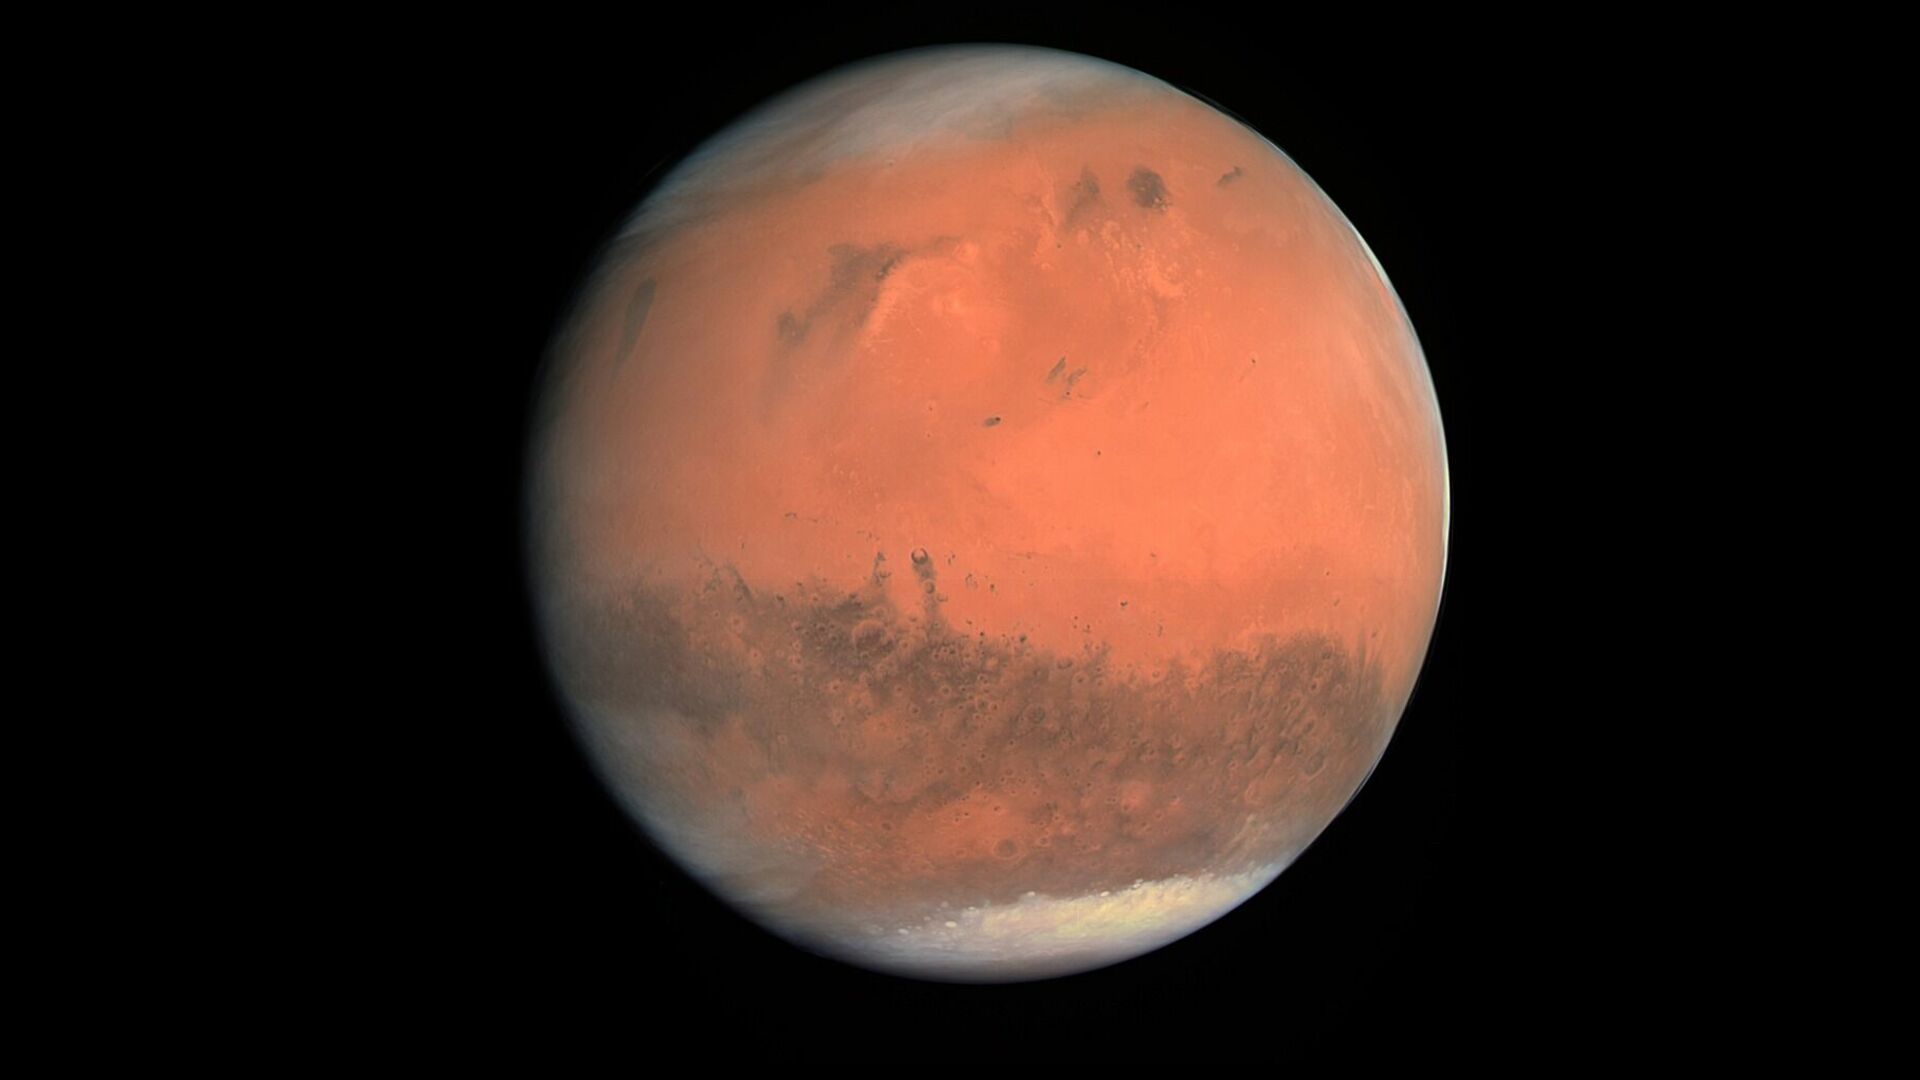 ВЦИОМ: почти четверть россиян хотела бы побывать на Марсе